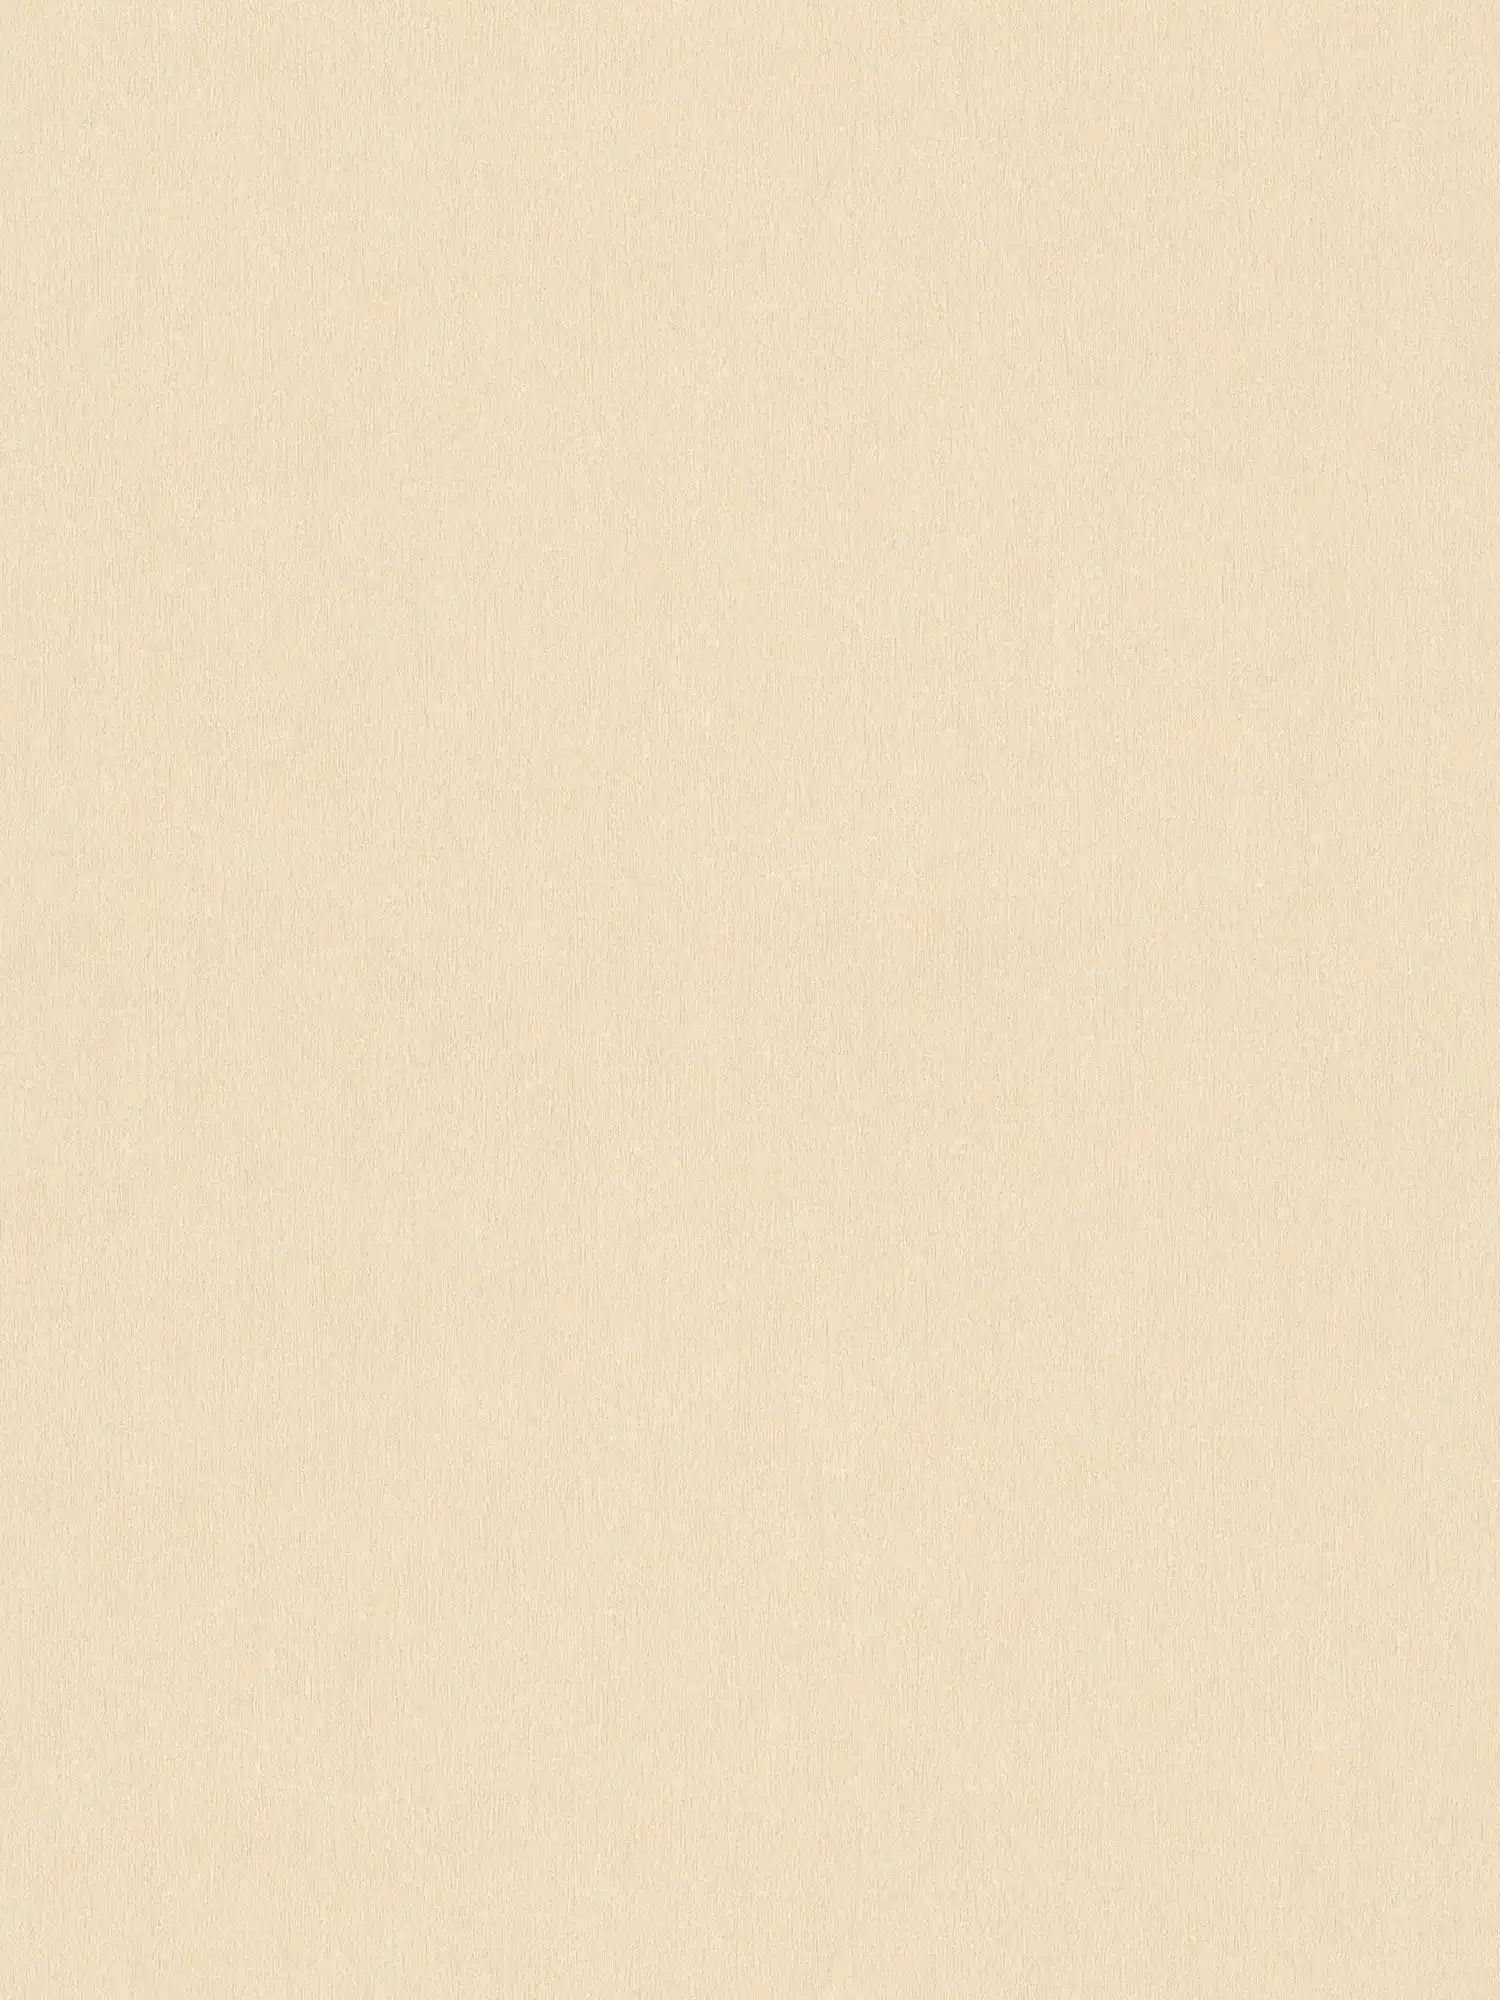 Carta da parati color crema-beige con struttura cromatica e superficie liscia
